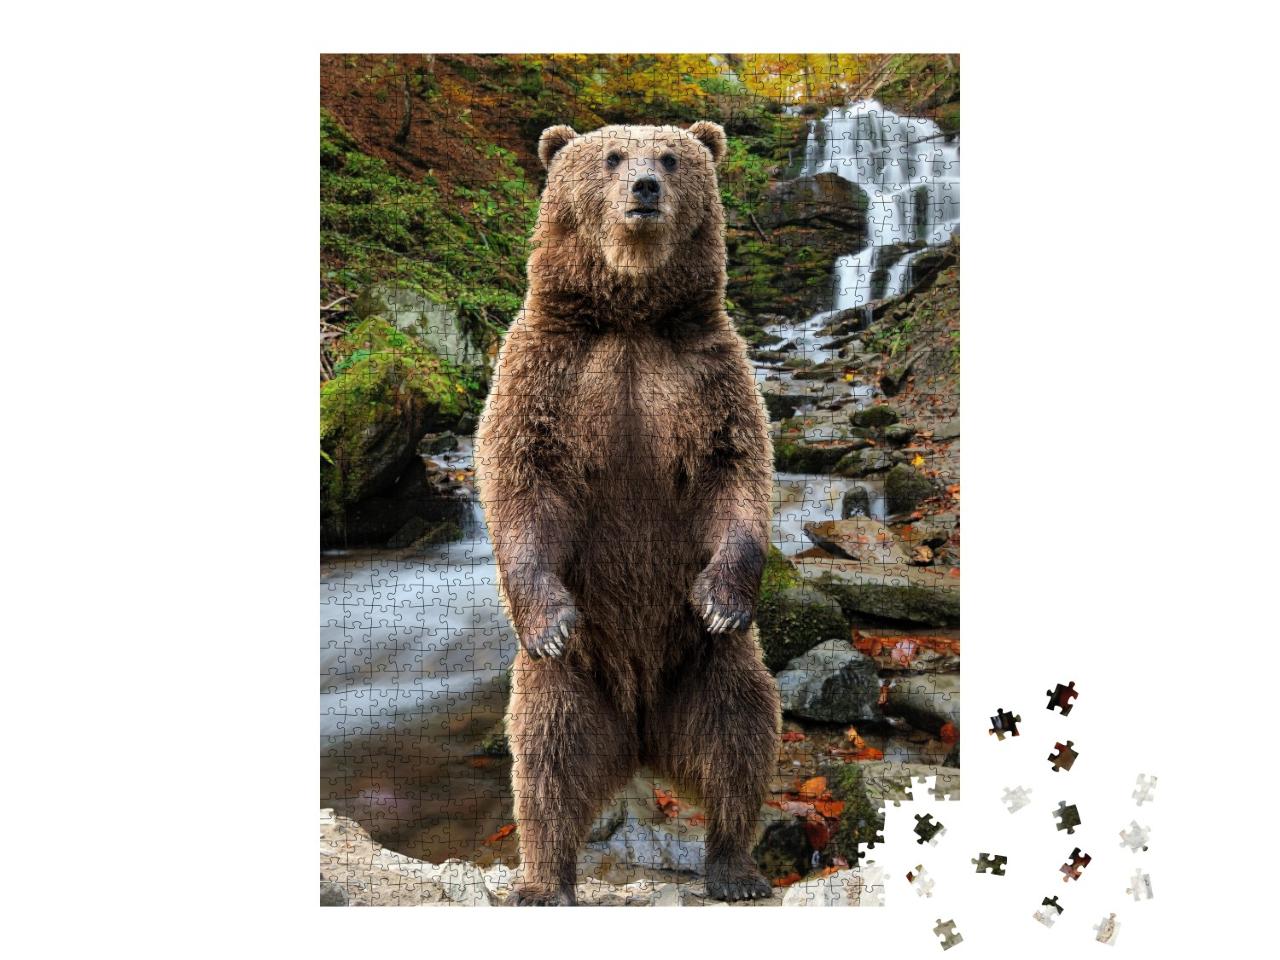 Puzzle 1000 Teile „Braunbär auf den Hinterbeinen stehend, Herbstwald, Wasserfall“